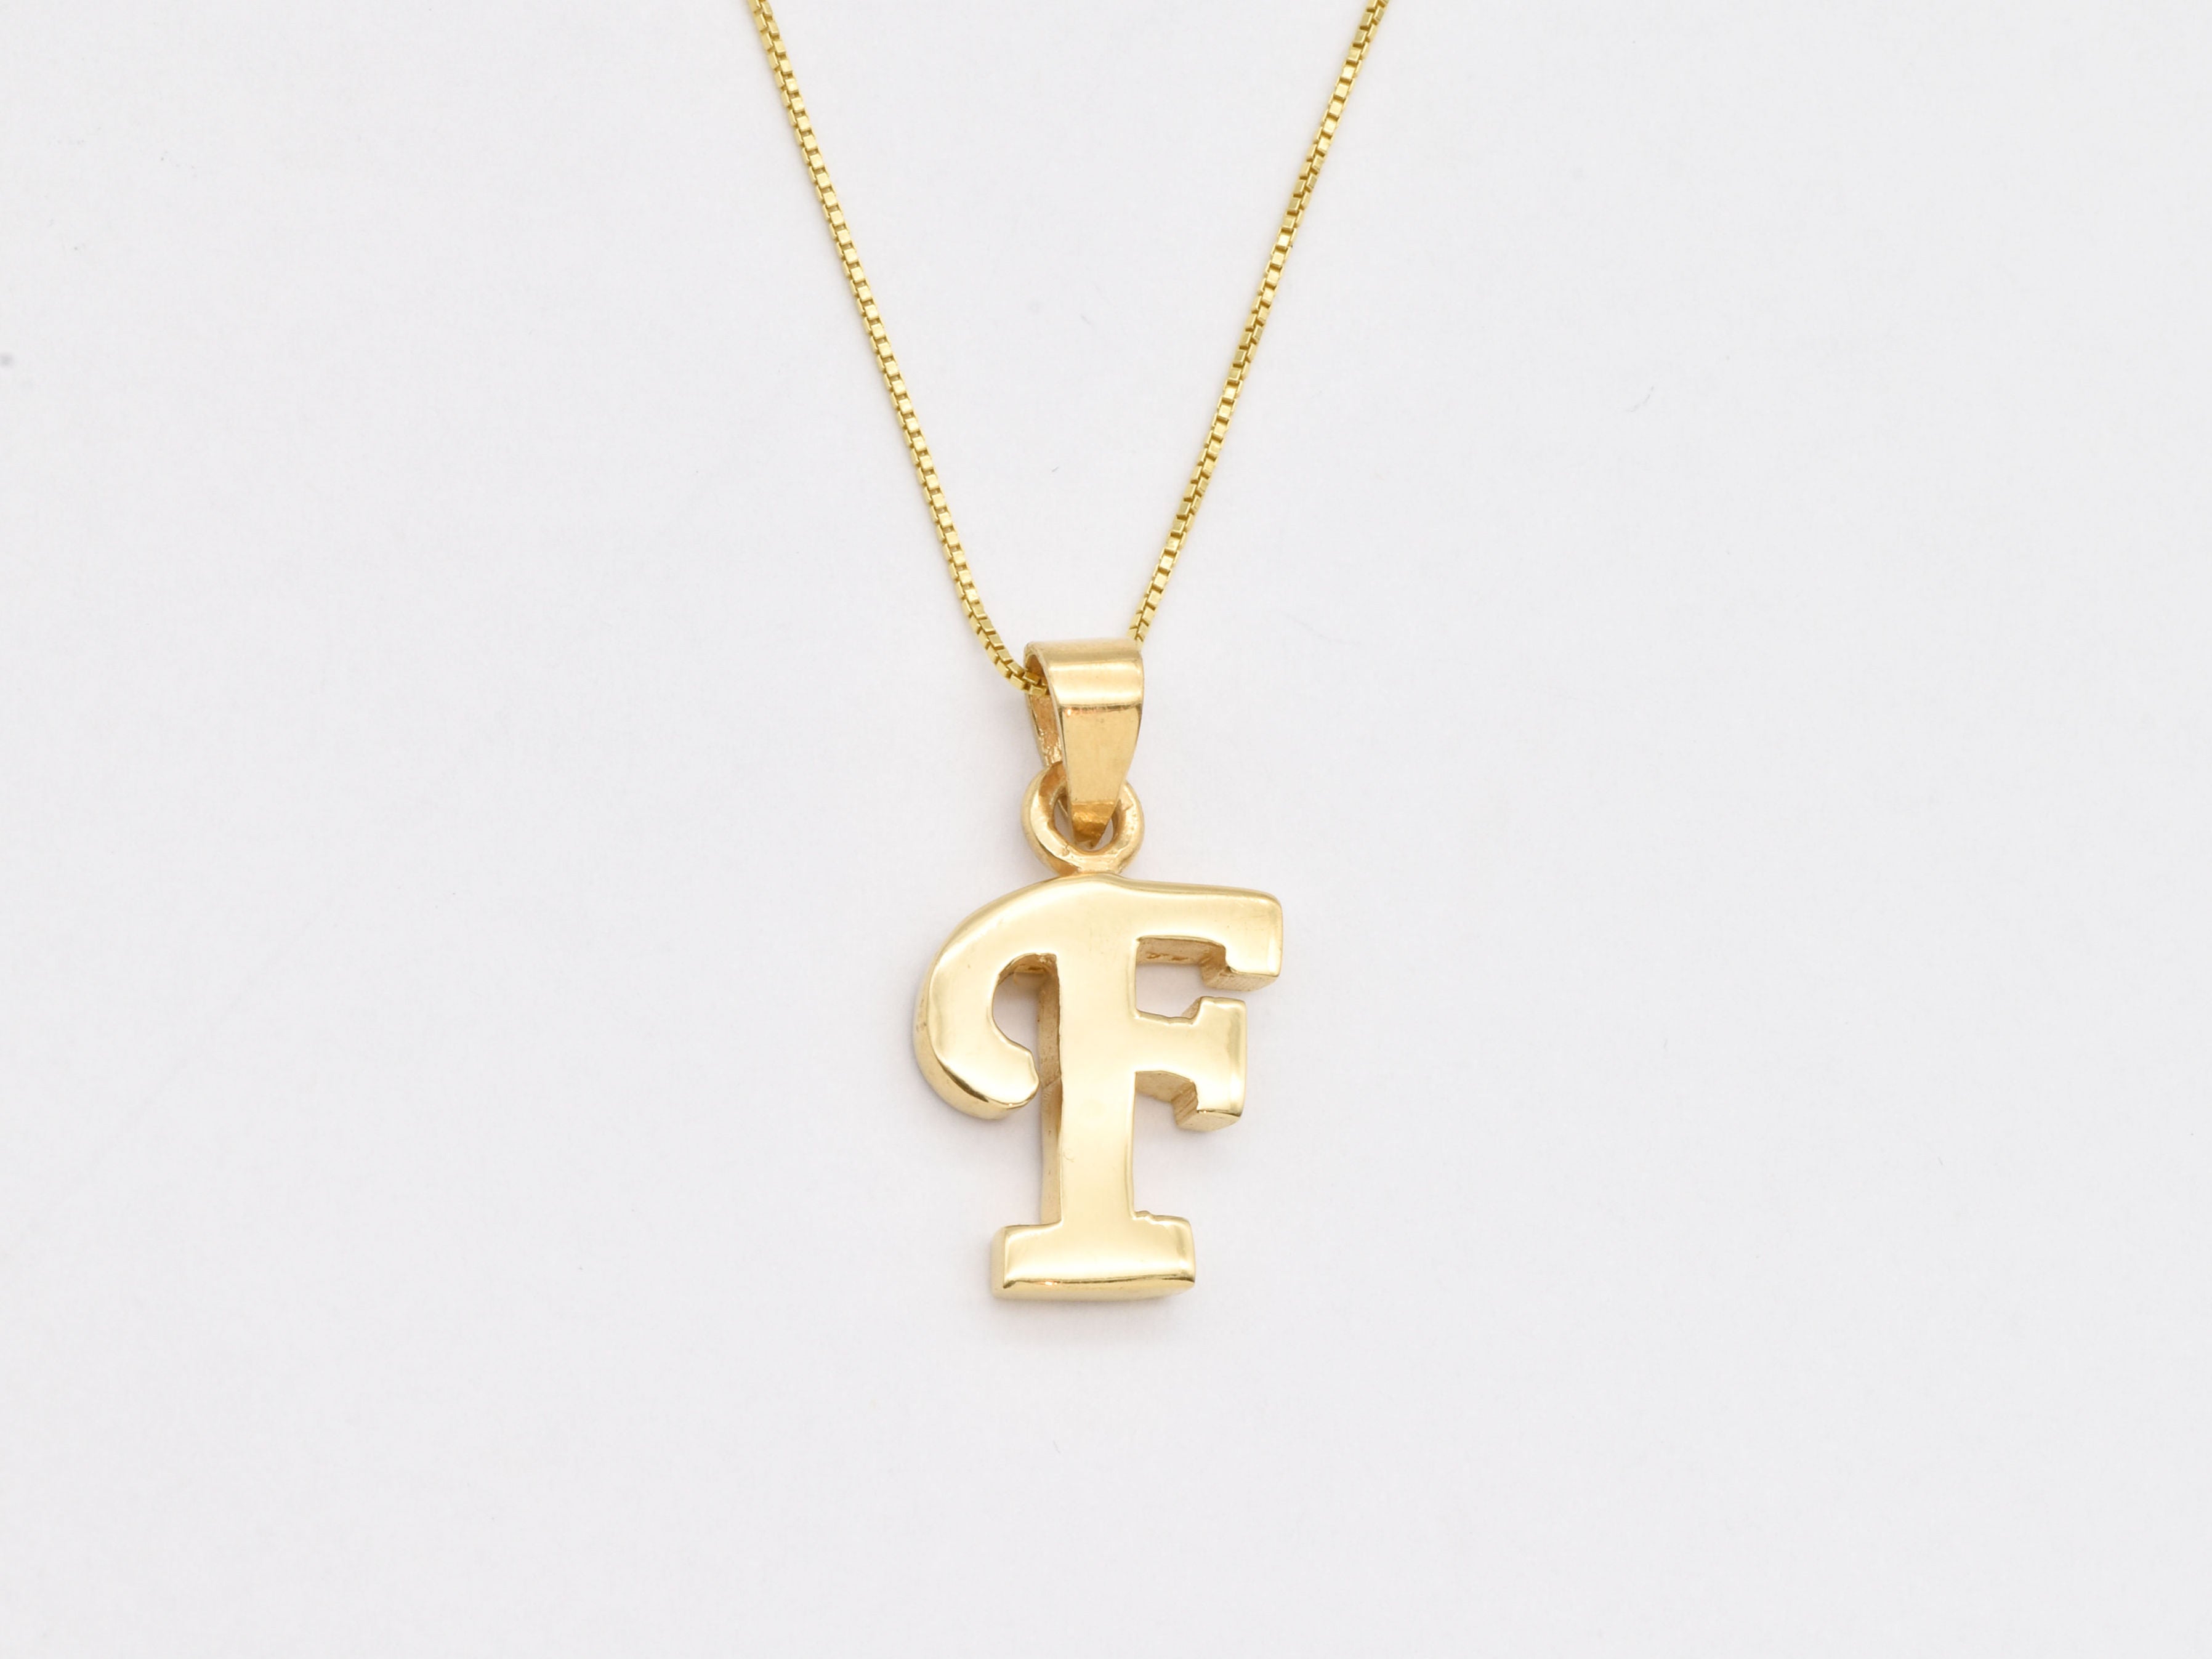 Gold Letter F Pendant - Alphabet Letter Necklace, Initial Letter F Pendant